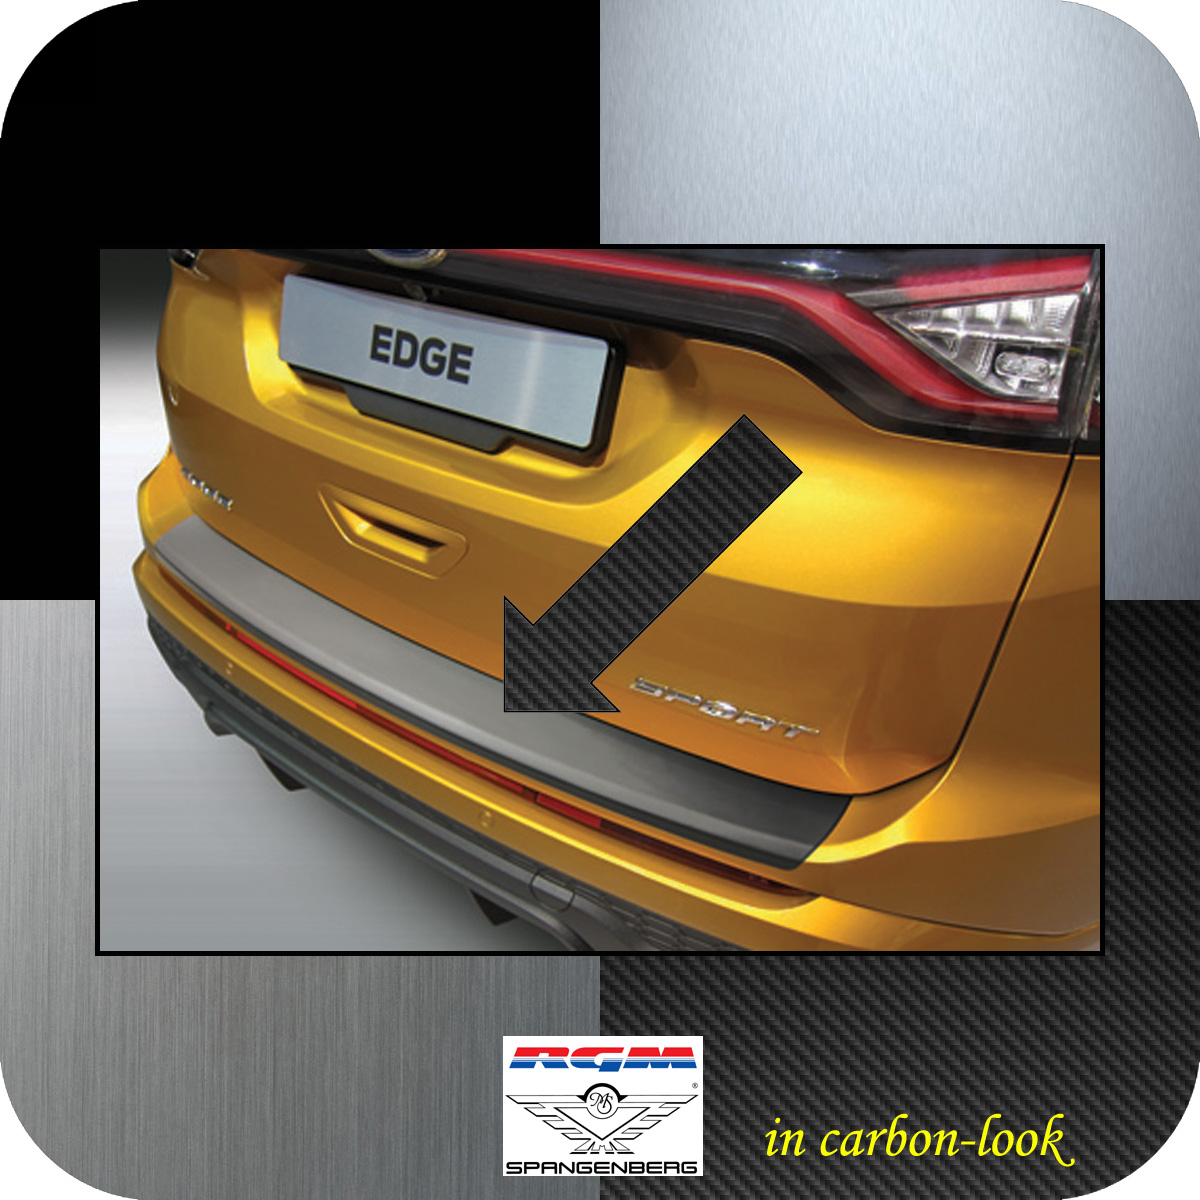 Ladekantenschutz Carbon-Look glatt Ford Edge II vor facelift 2016-18 3509901